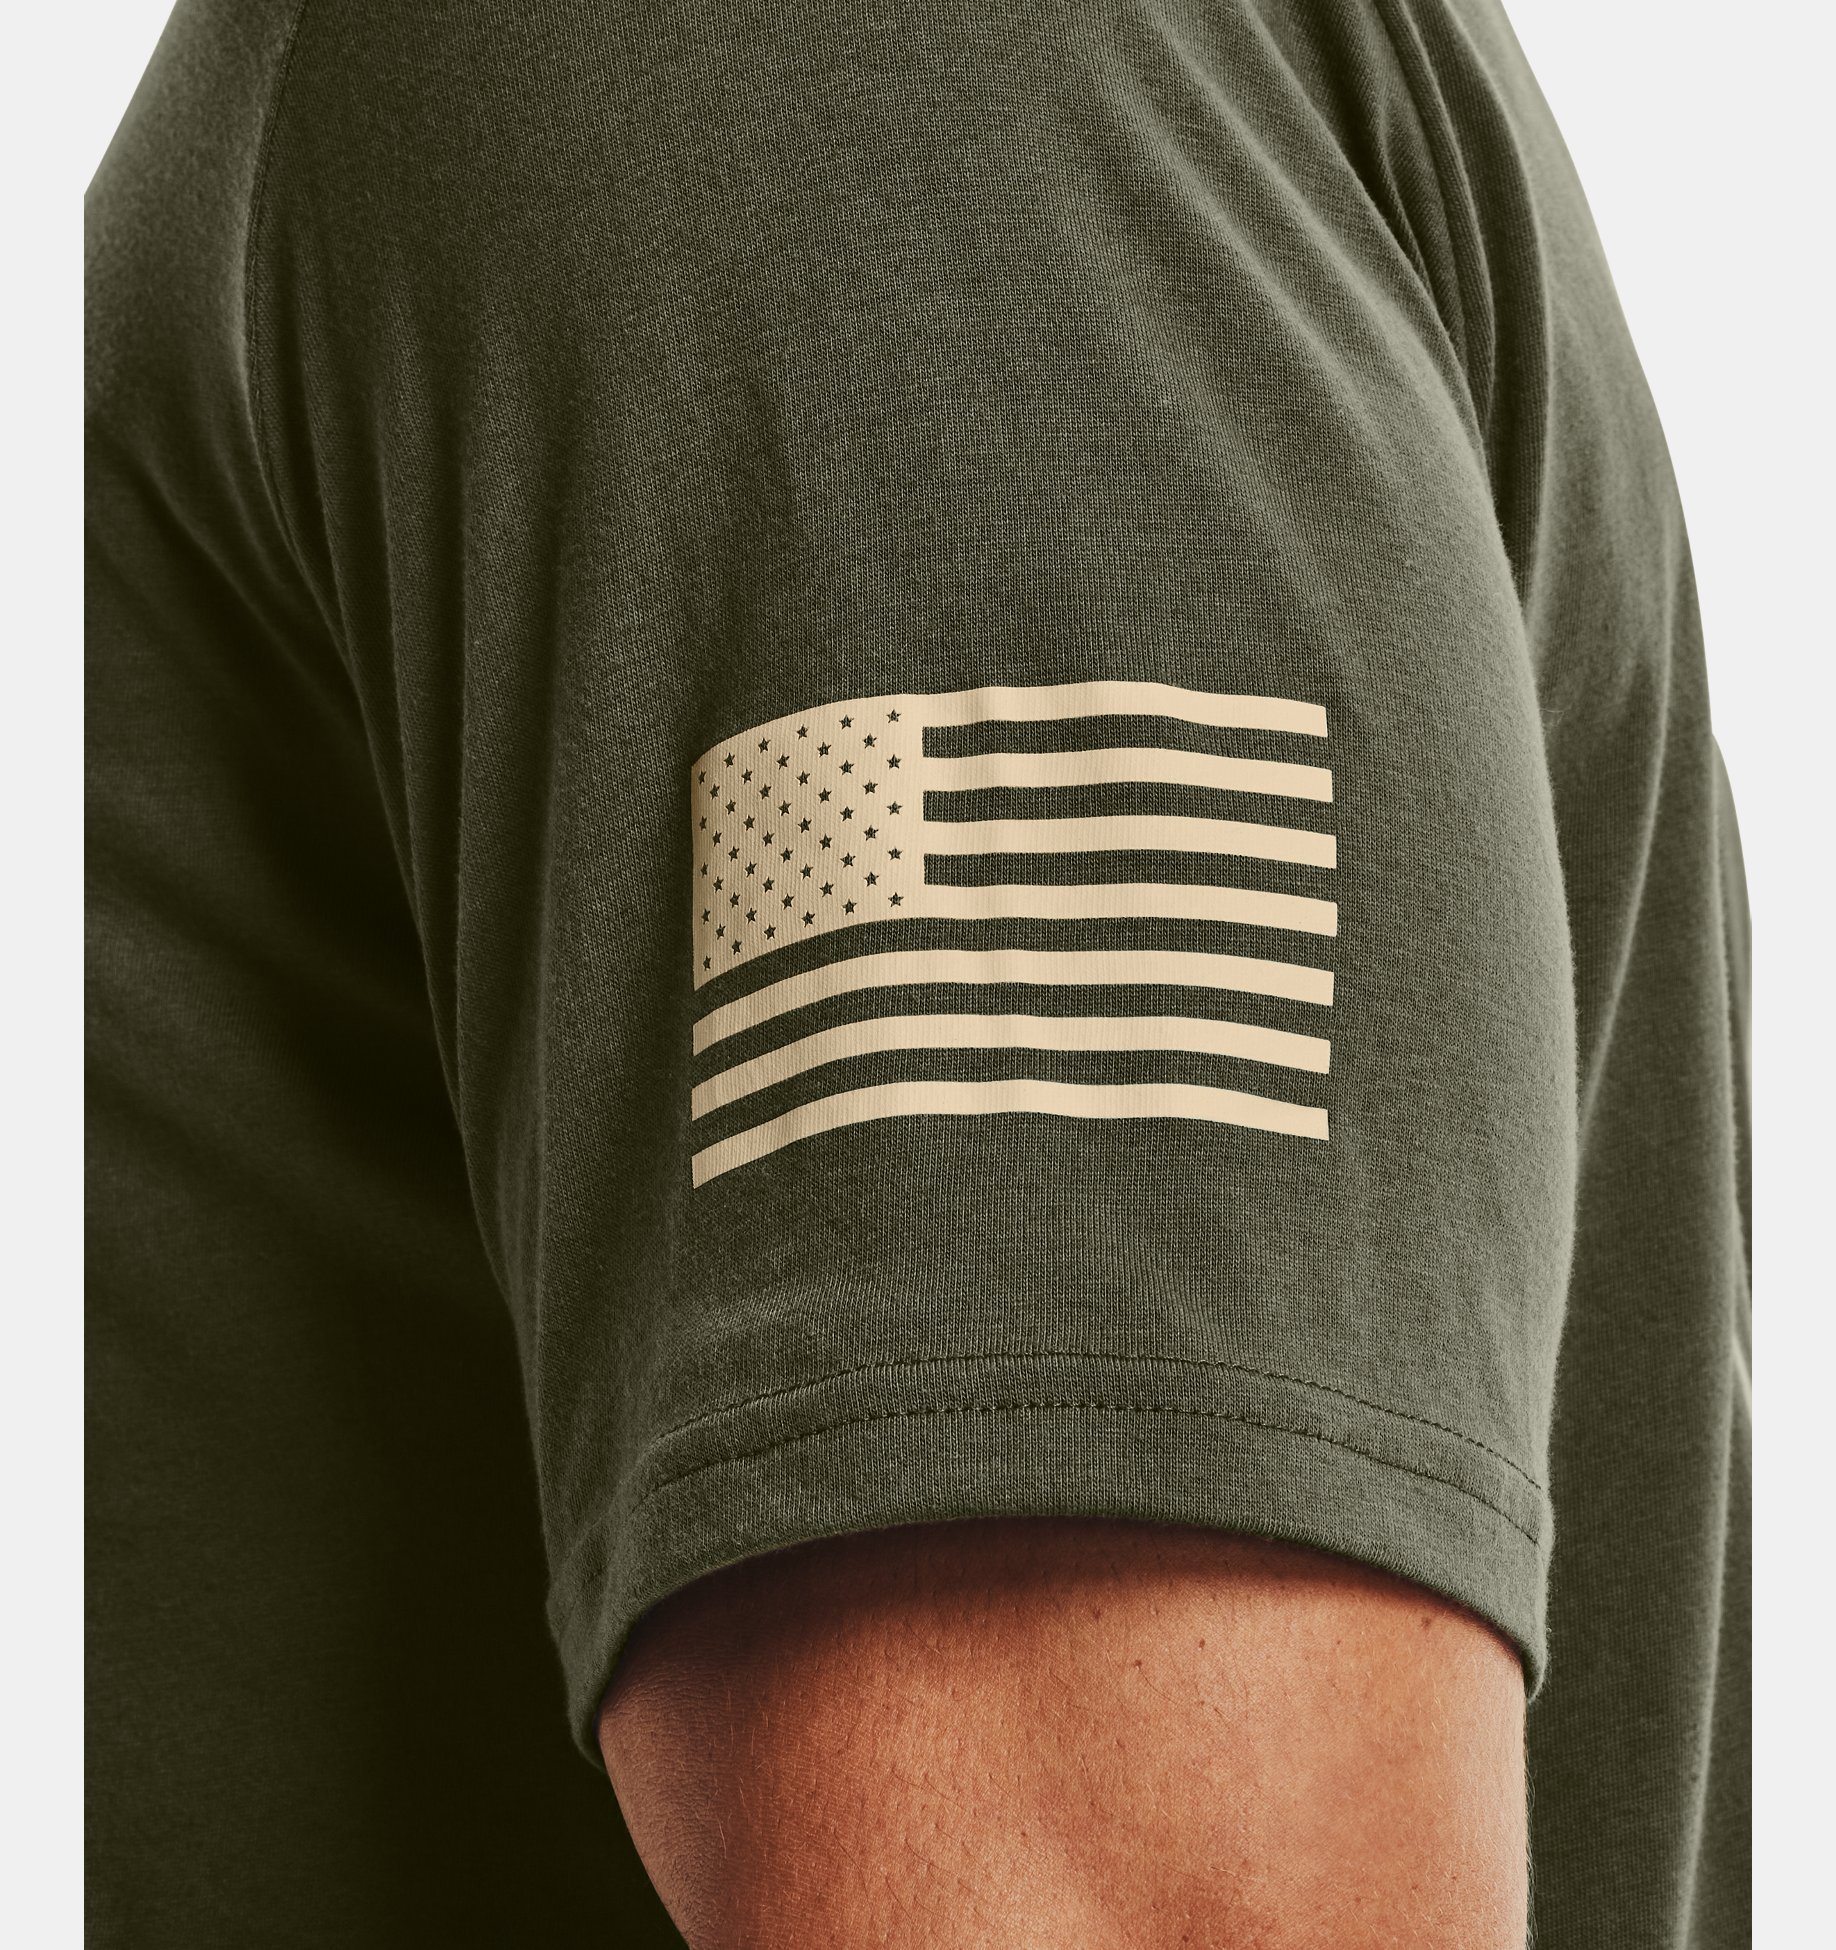 Under Armour Boys Freedom Flag T-Shirt